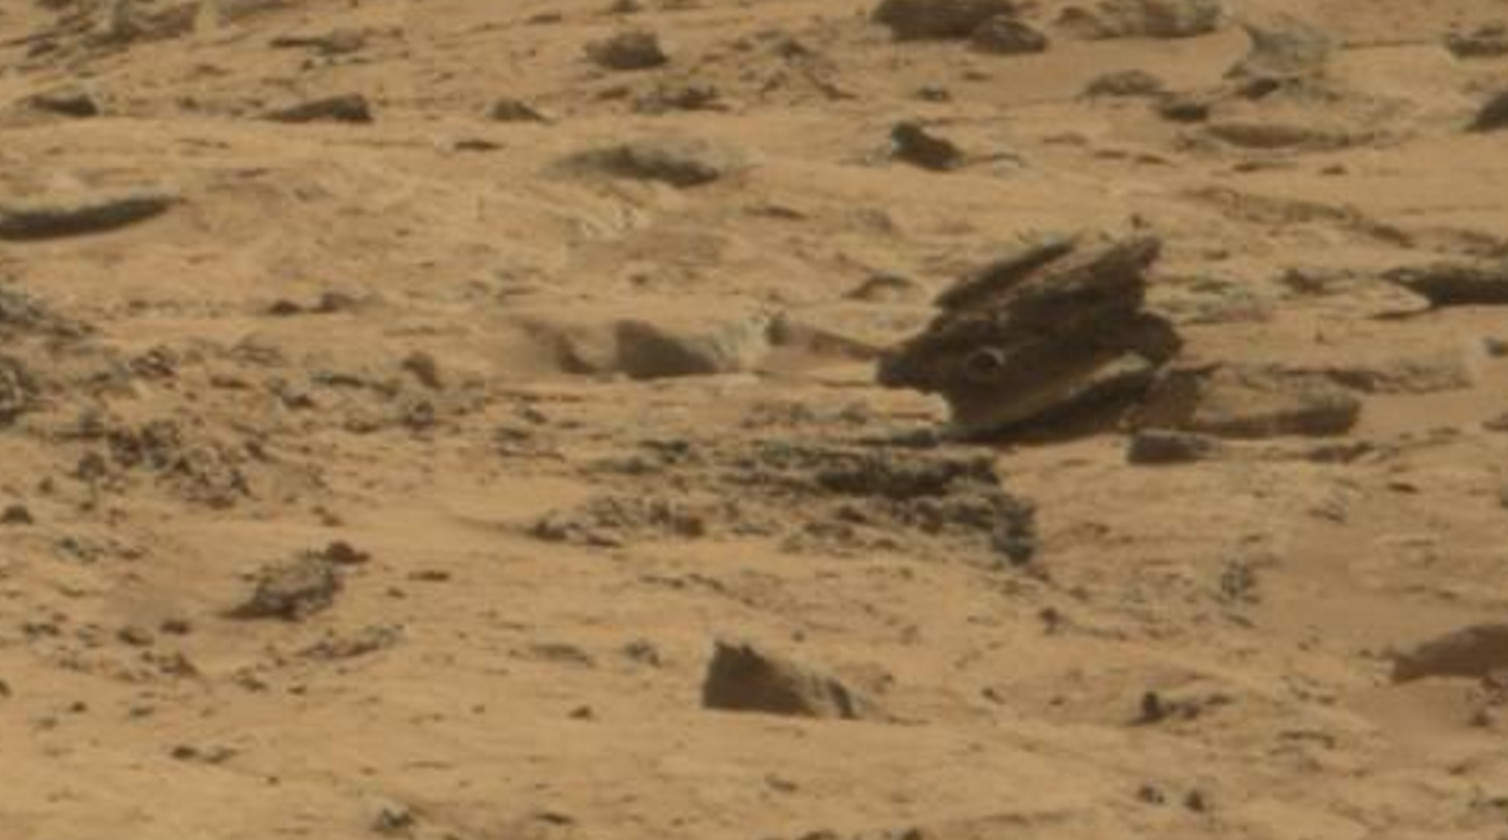 Alien Drone on Mars